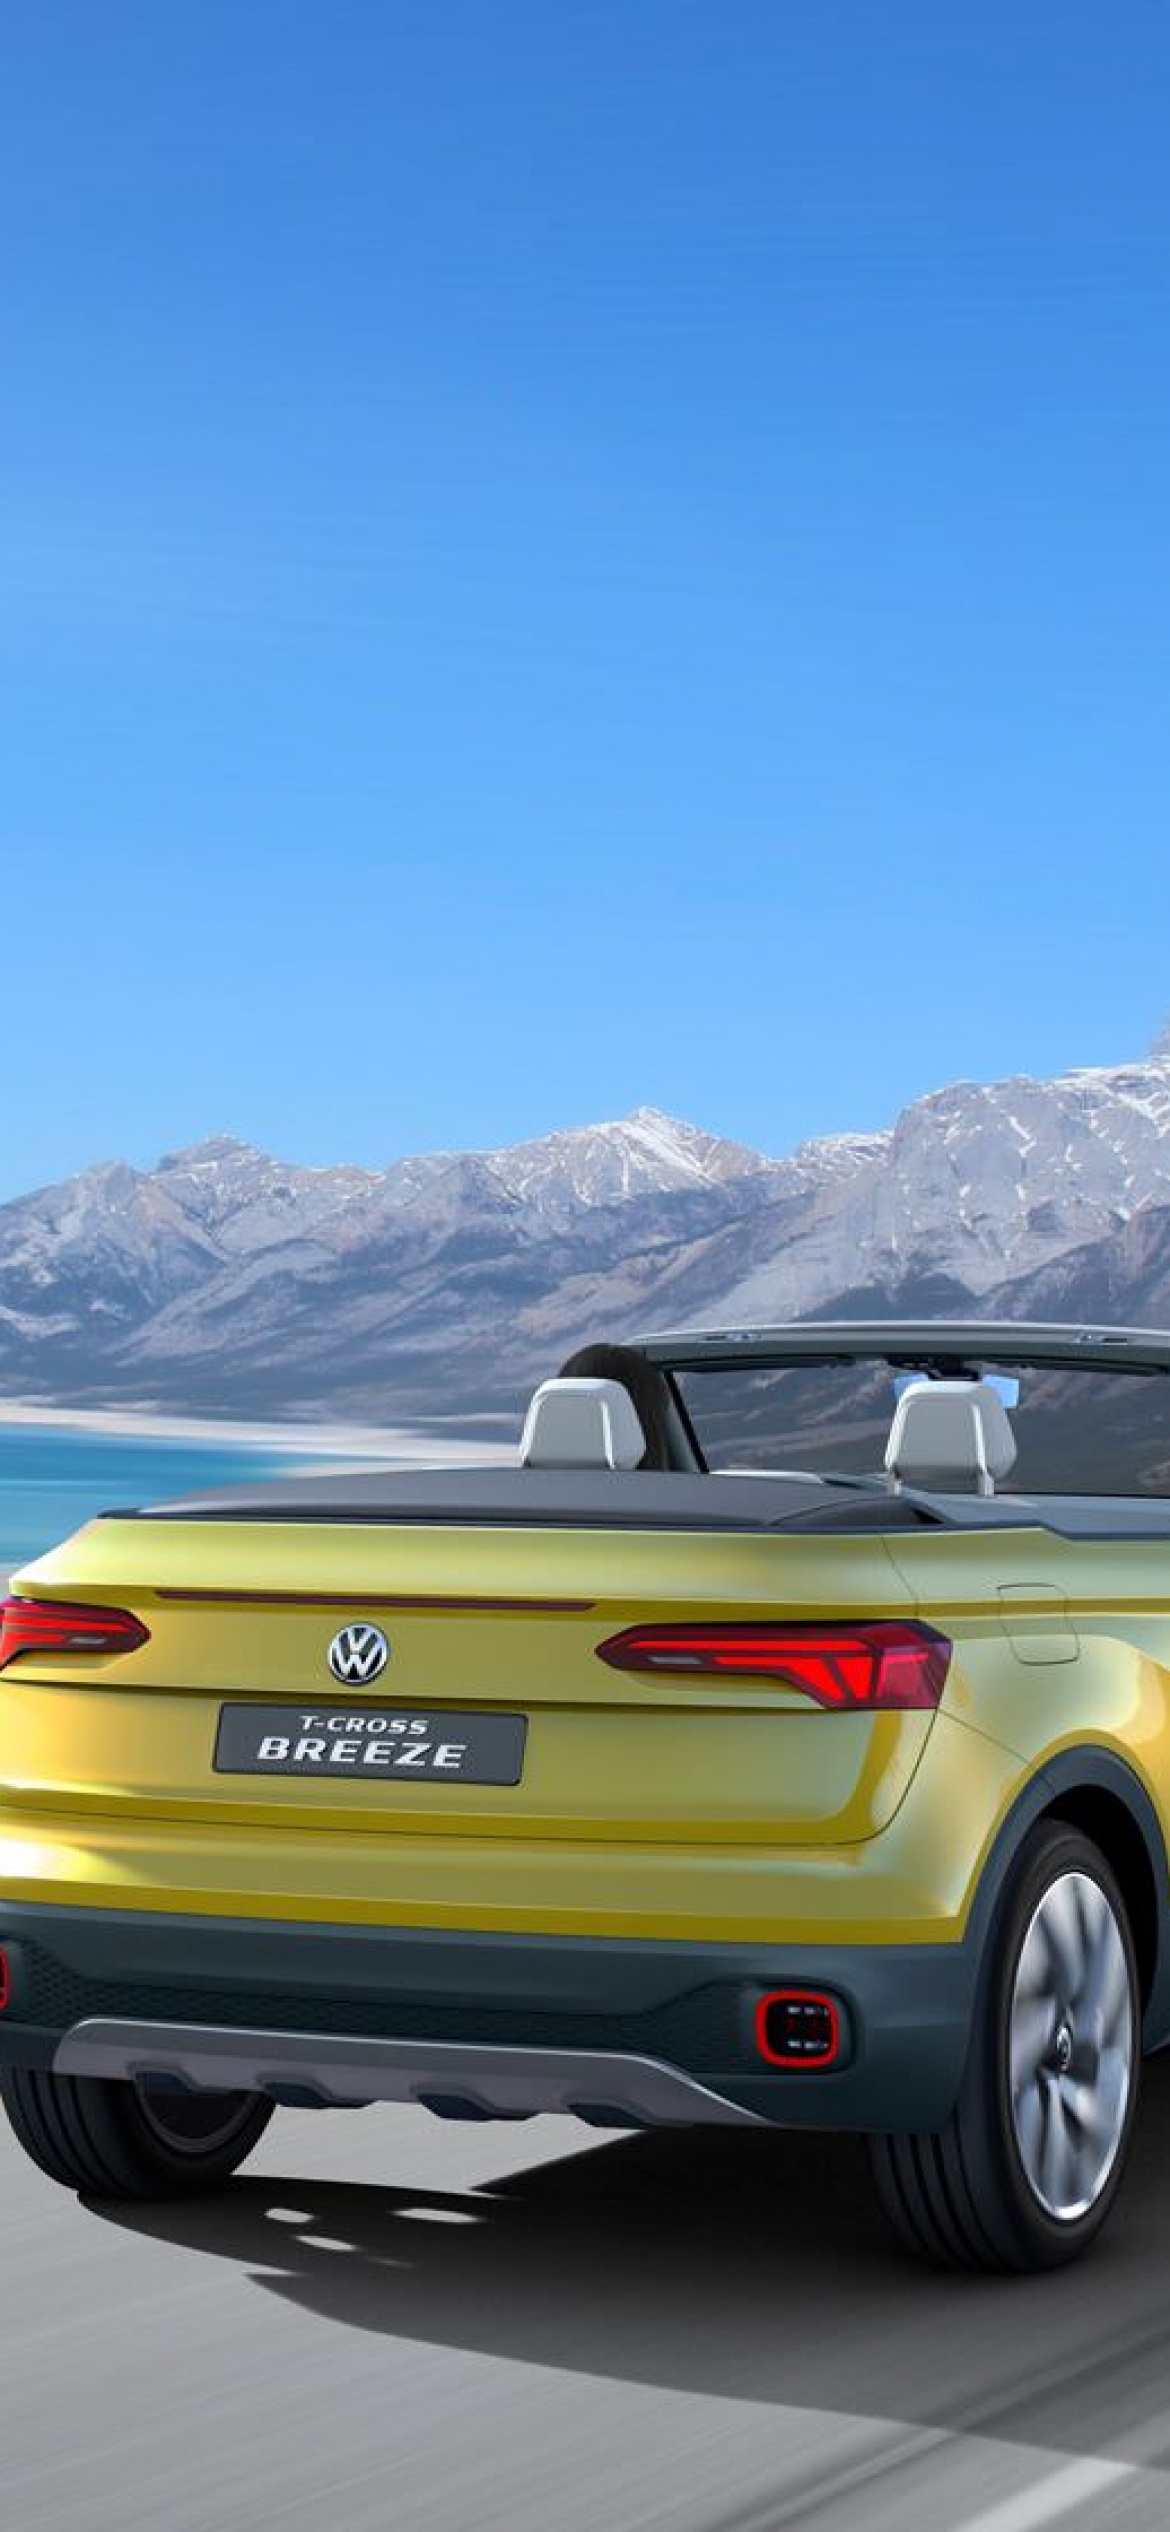 Volkswagen T-Cross, HD pictures, 2020 model, Car wallpaper, 1170x2540 HD Handy